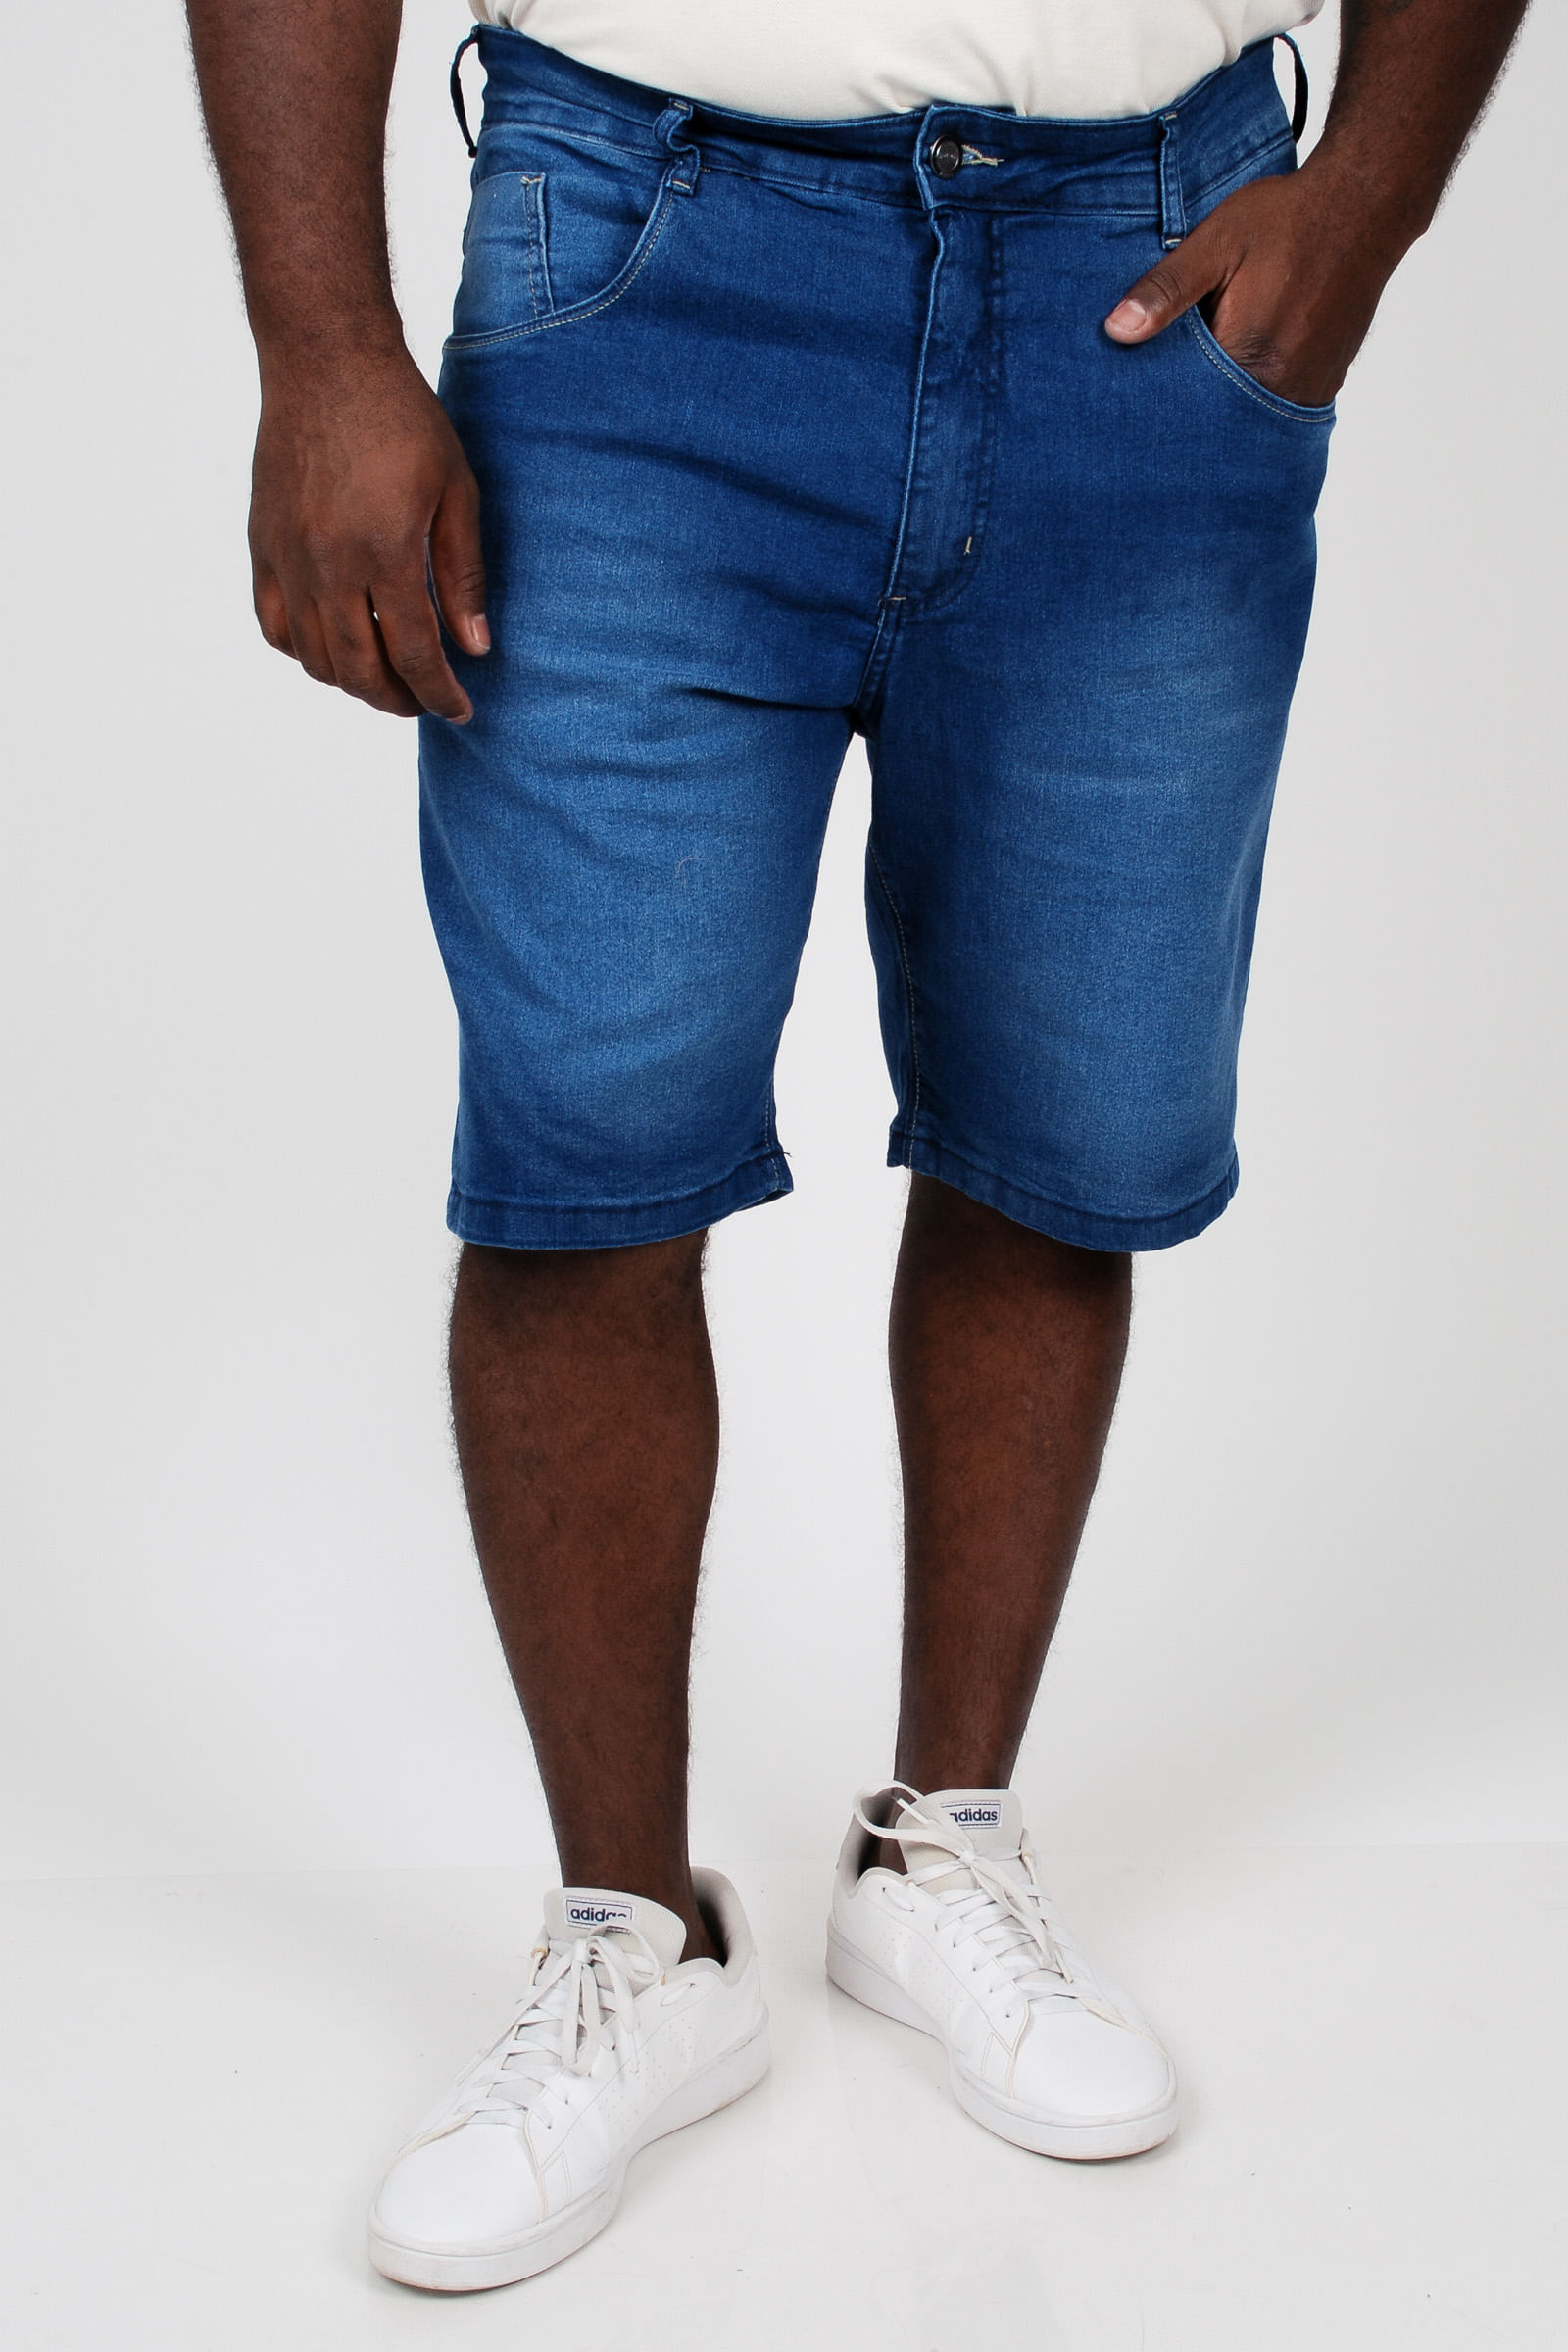 Bermuda-jeans-masculina-plus-size_0102_1